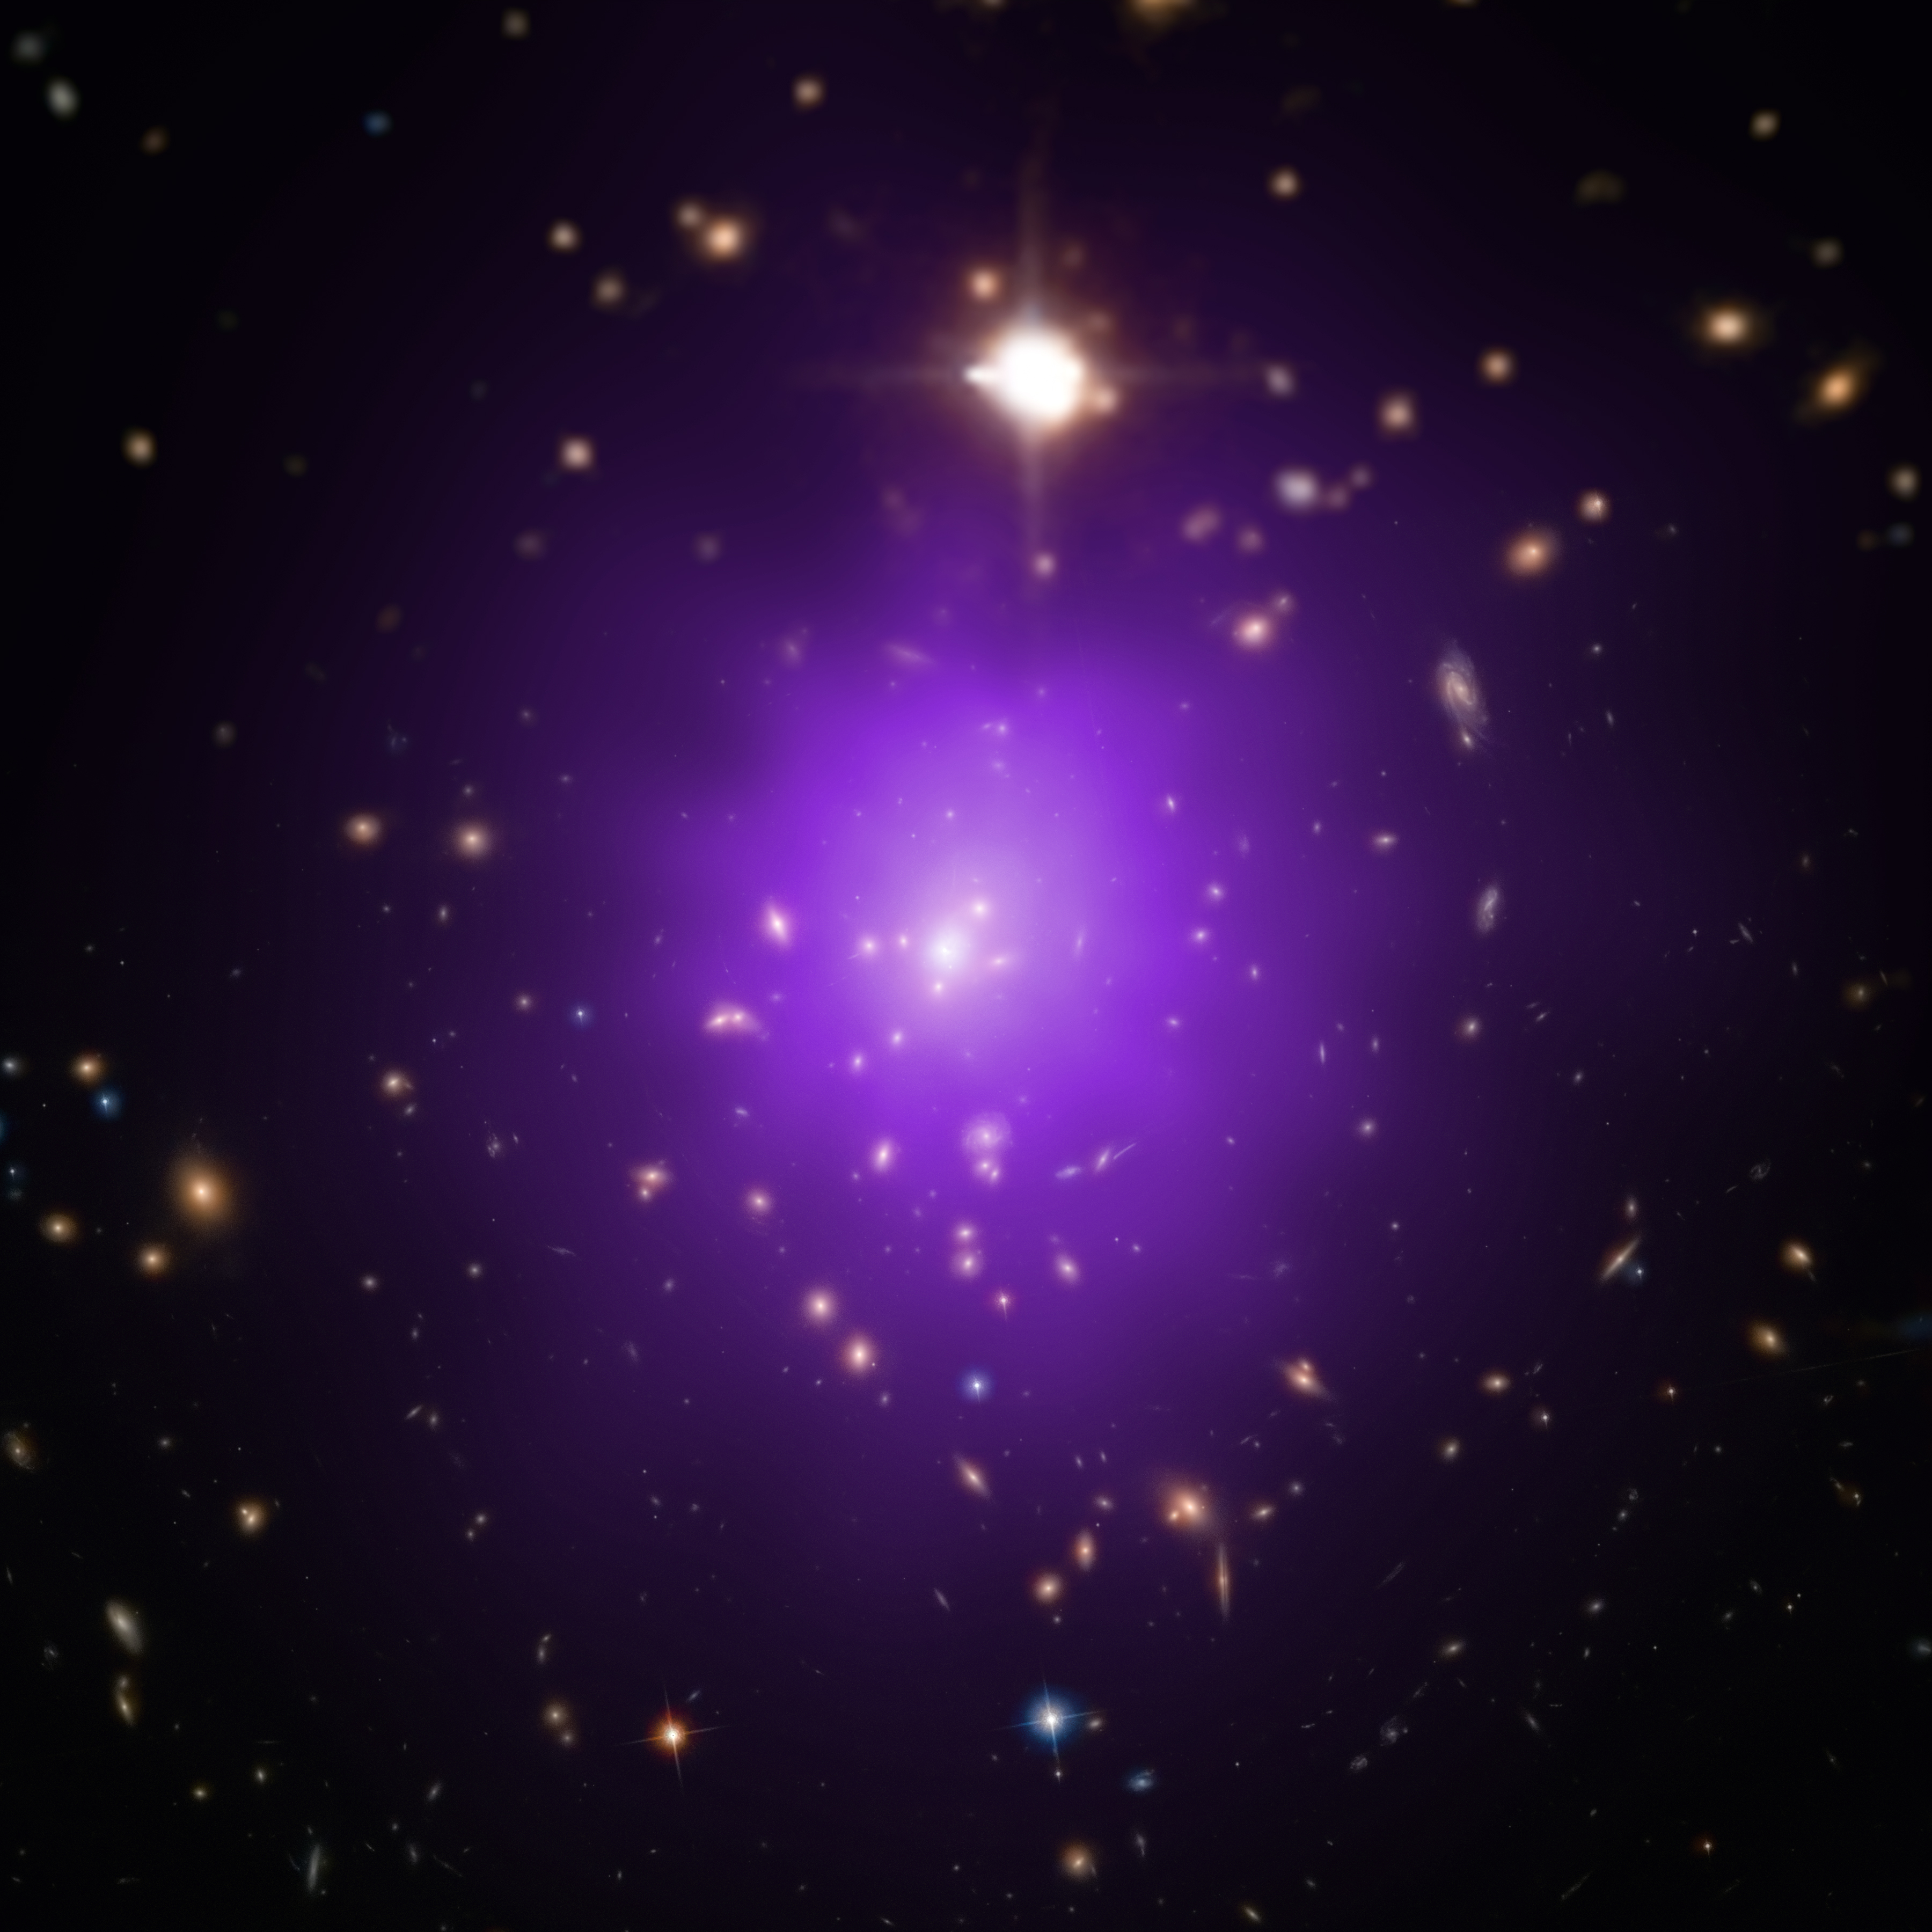 Jaký bude osud vesmíru s temnou energií? Kredit: X-ray: NASA/CXC/Univ. of Alabama/A. Morandi et al; Optical: SDSS, NASA/STScI.